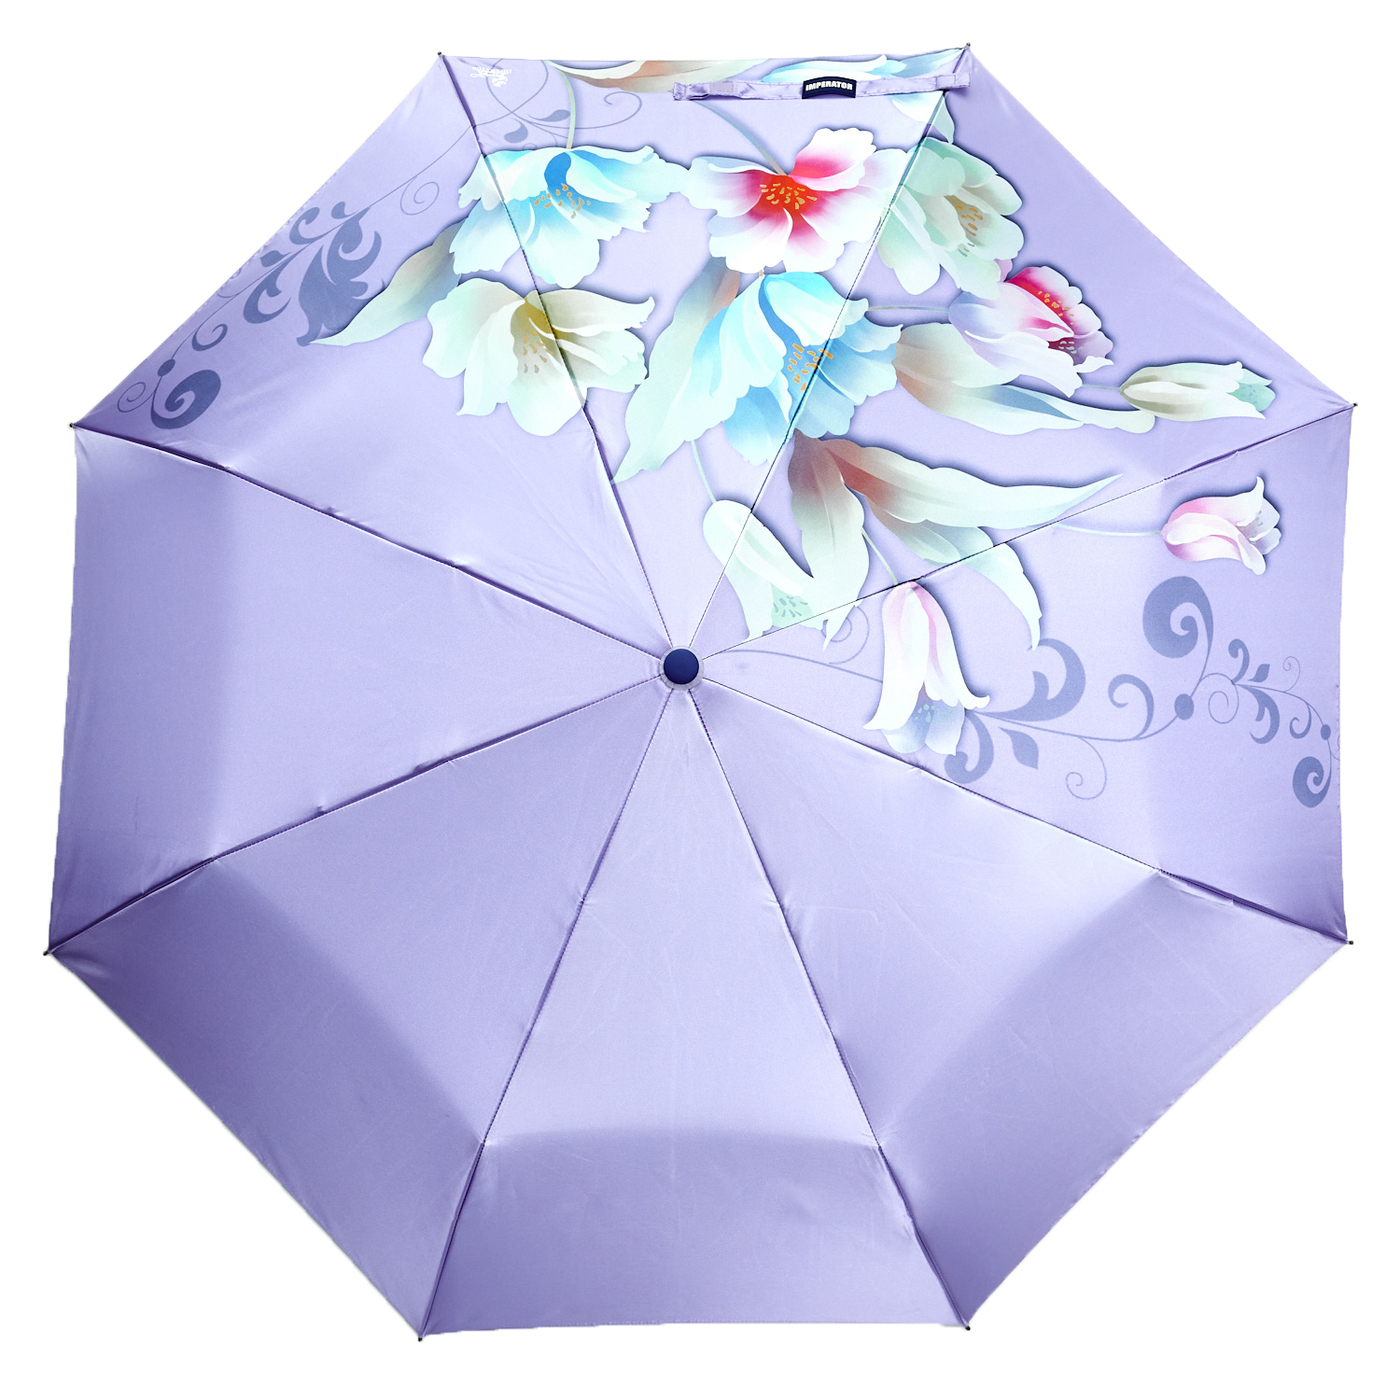 Зонтик легкий. Зонт Император Амбрелла. Imperator Umbrella зонт. Зонт автомат Роял Амбрелла. Зонт подарочный.